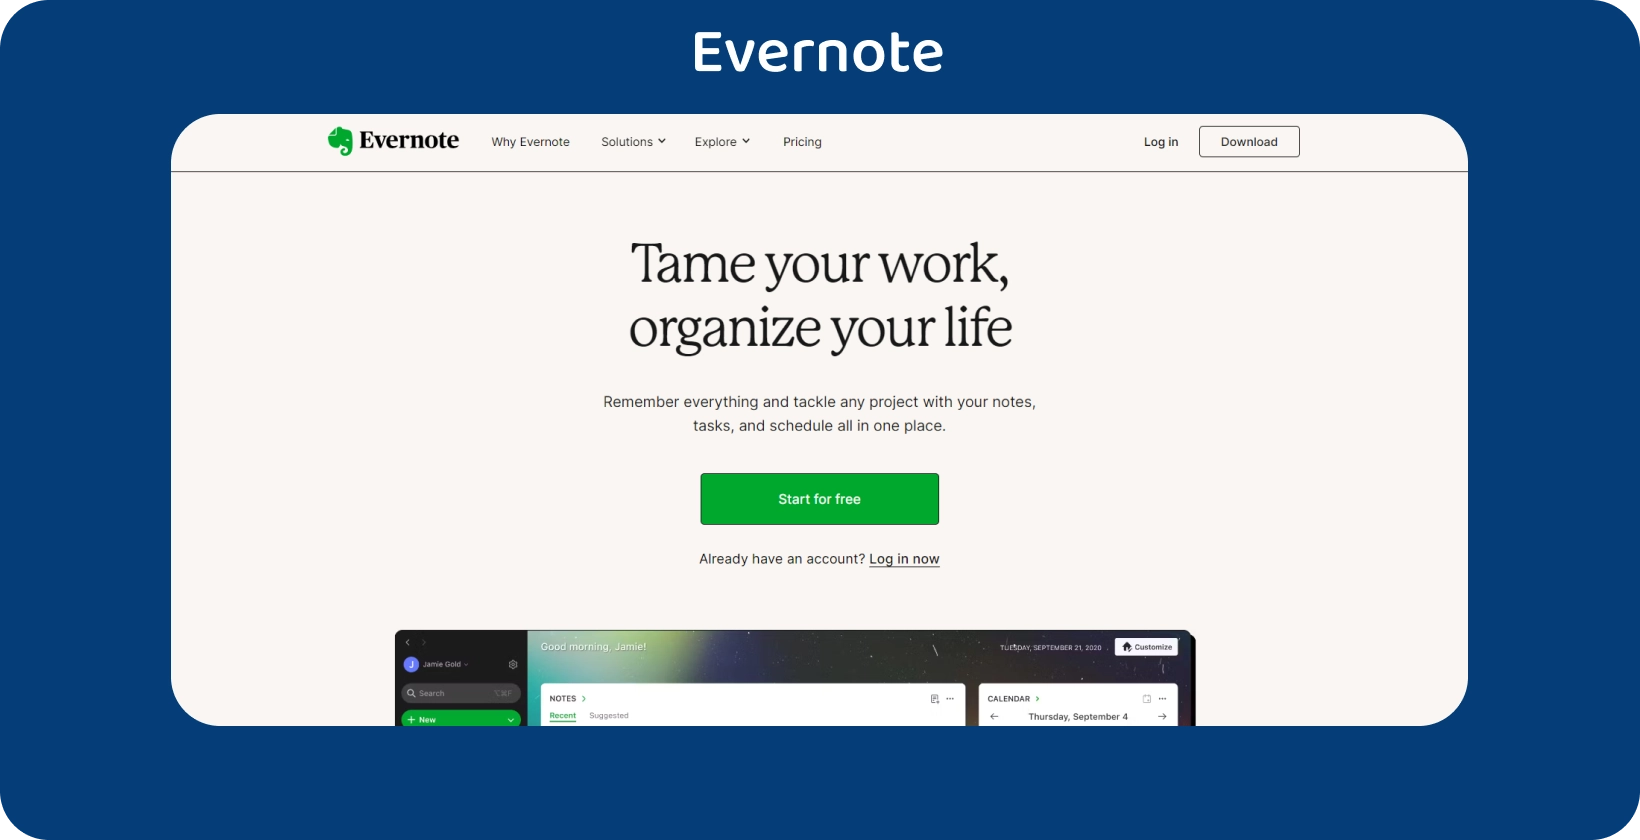 La pantalla de toma de notas de Evernote con lista de tareas pendientes, lo que agiliza la organización de tareas.